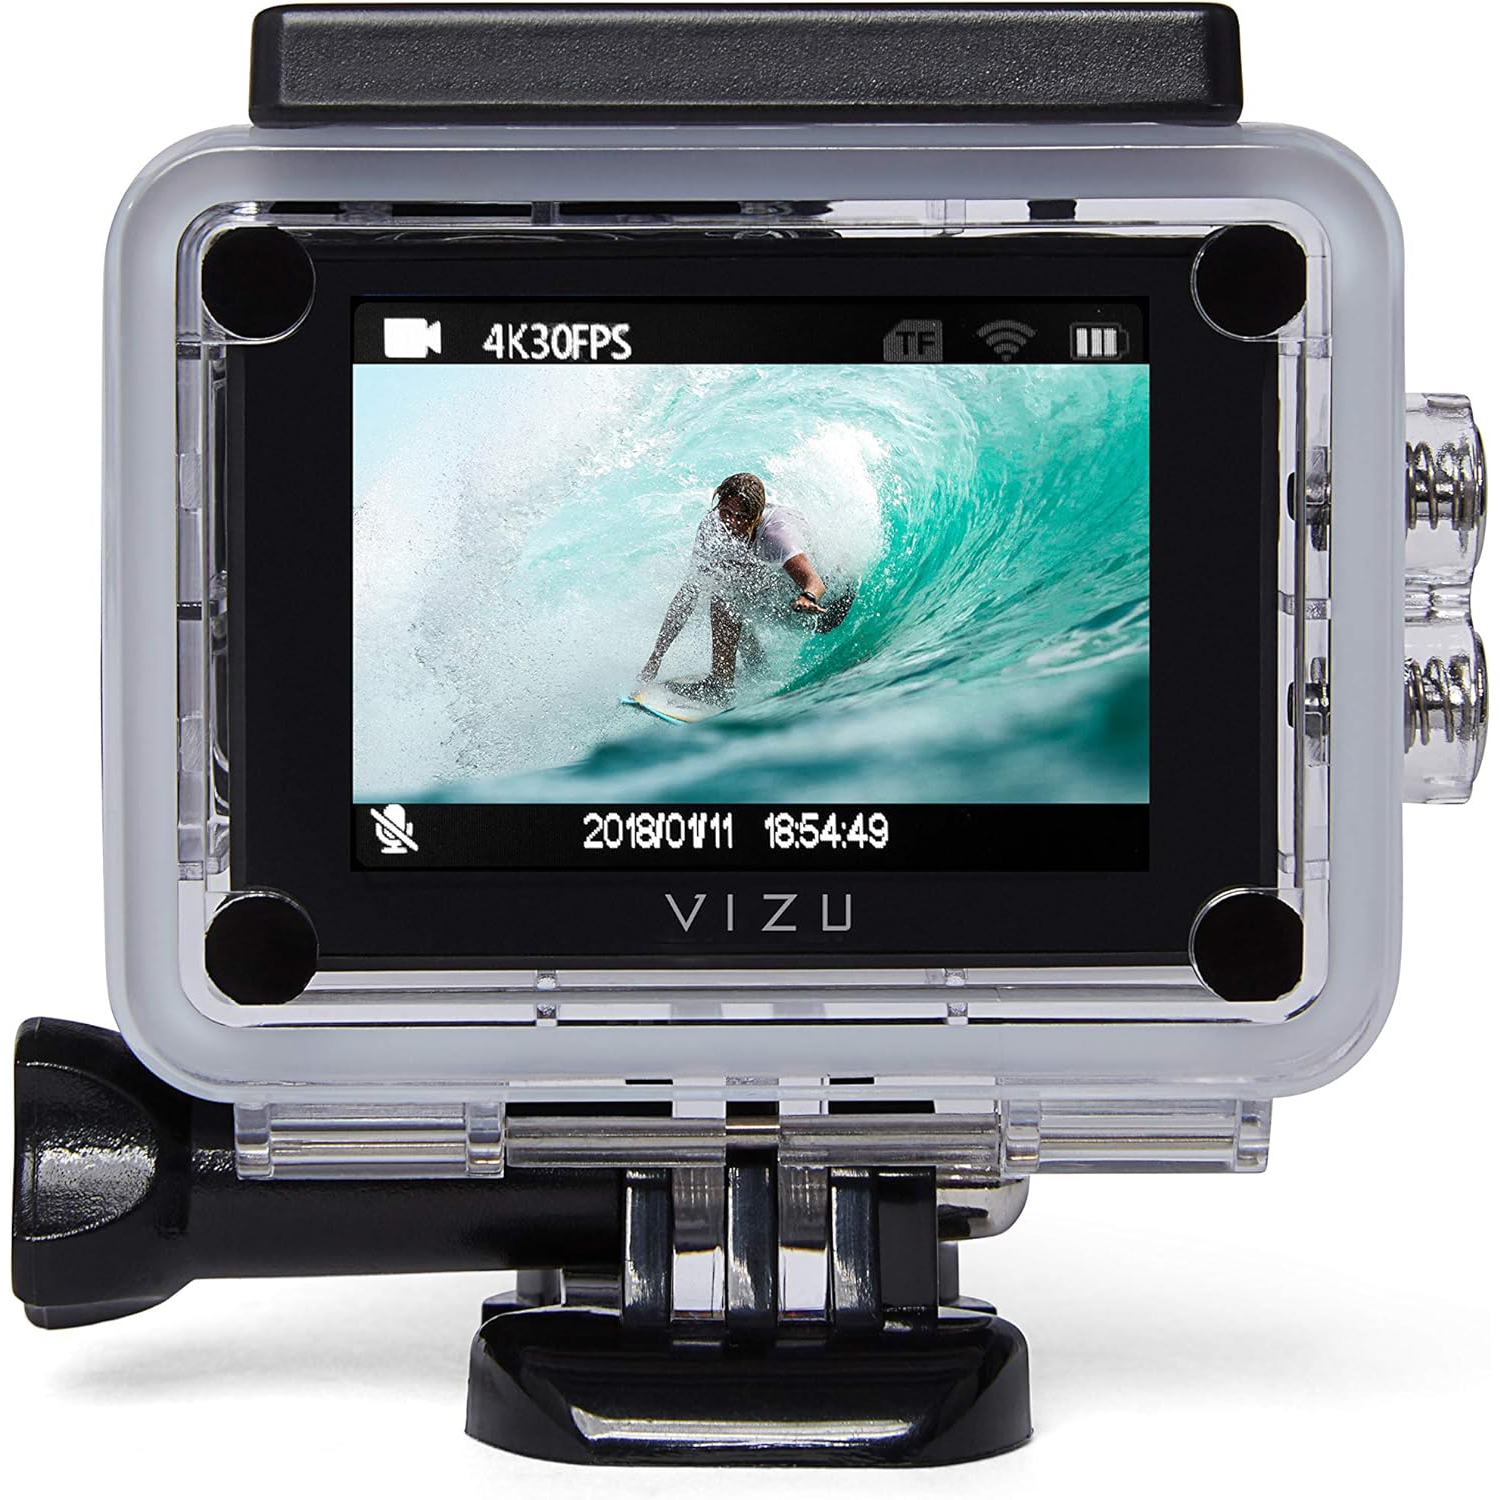 دوربین فیلم برداری ورزشی ویزو مدل Extreme X8S